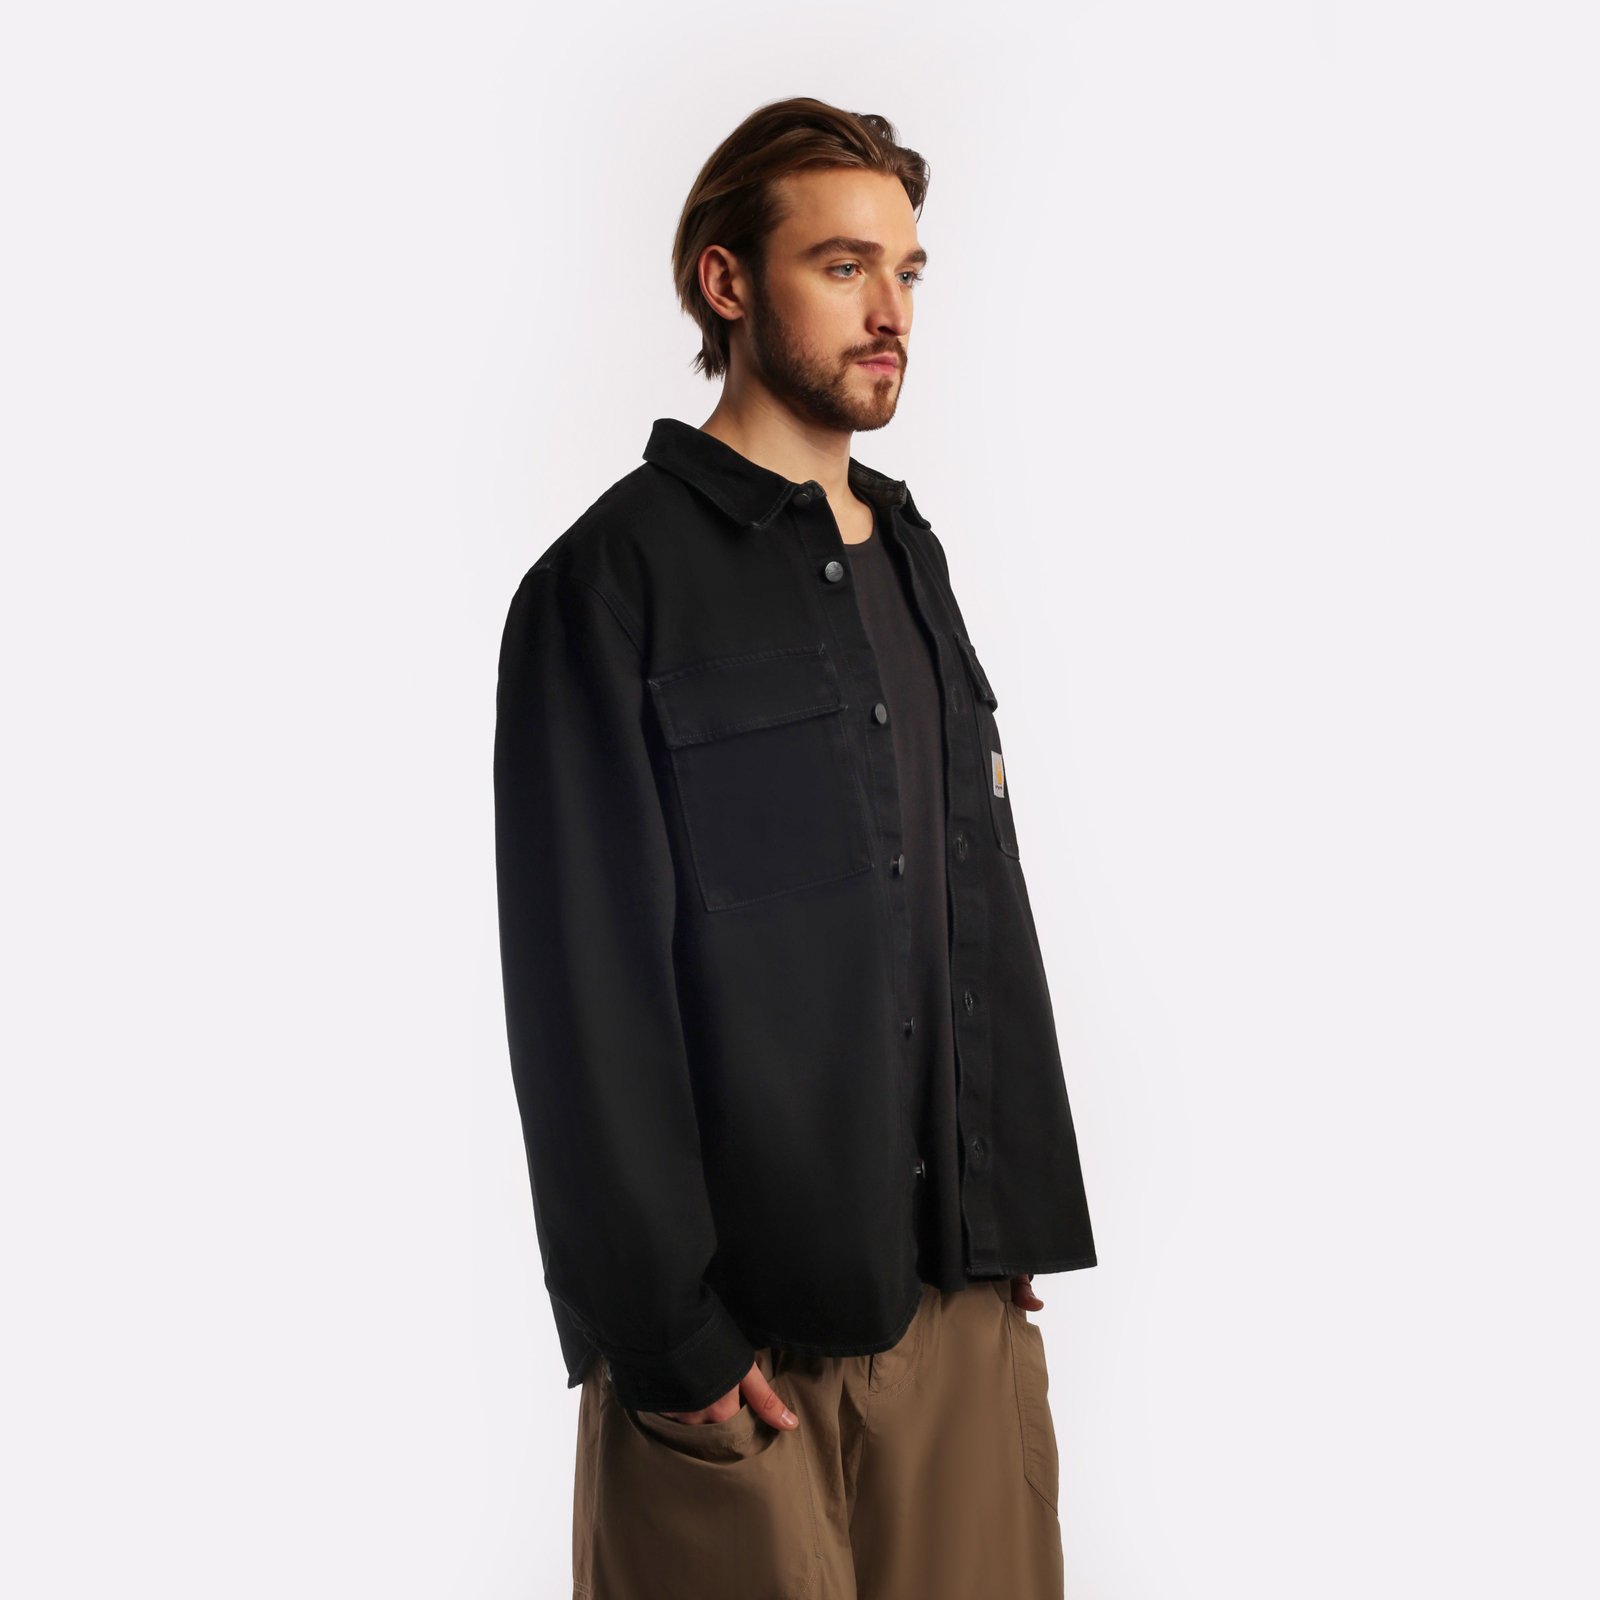 мужская куртка Carhartt WIP Manny Shirt Jac  (I032705-black)  - цена, описание, фото 3